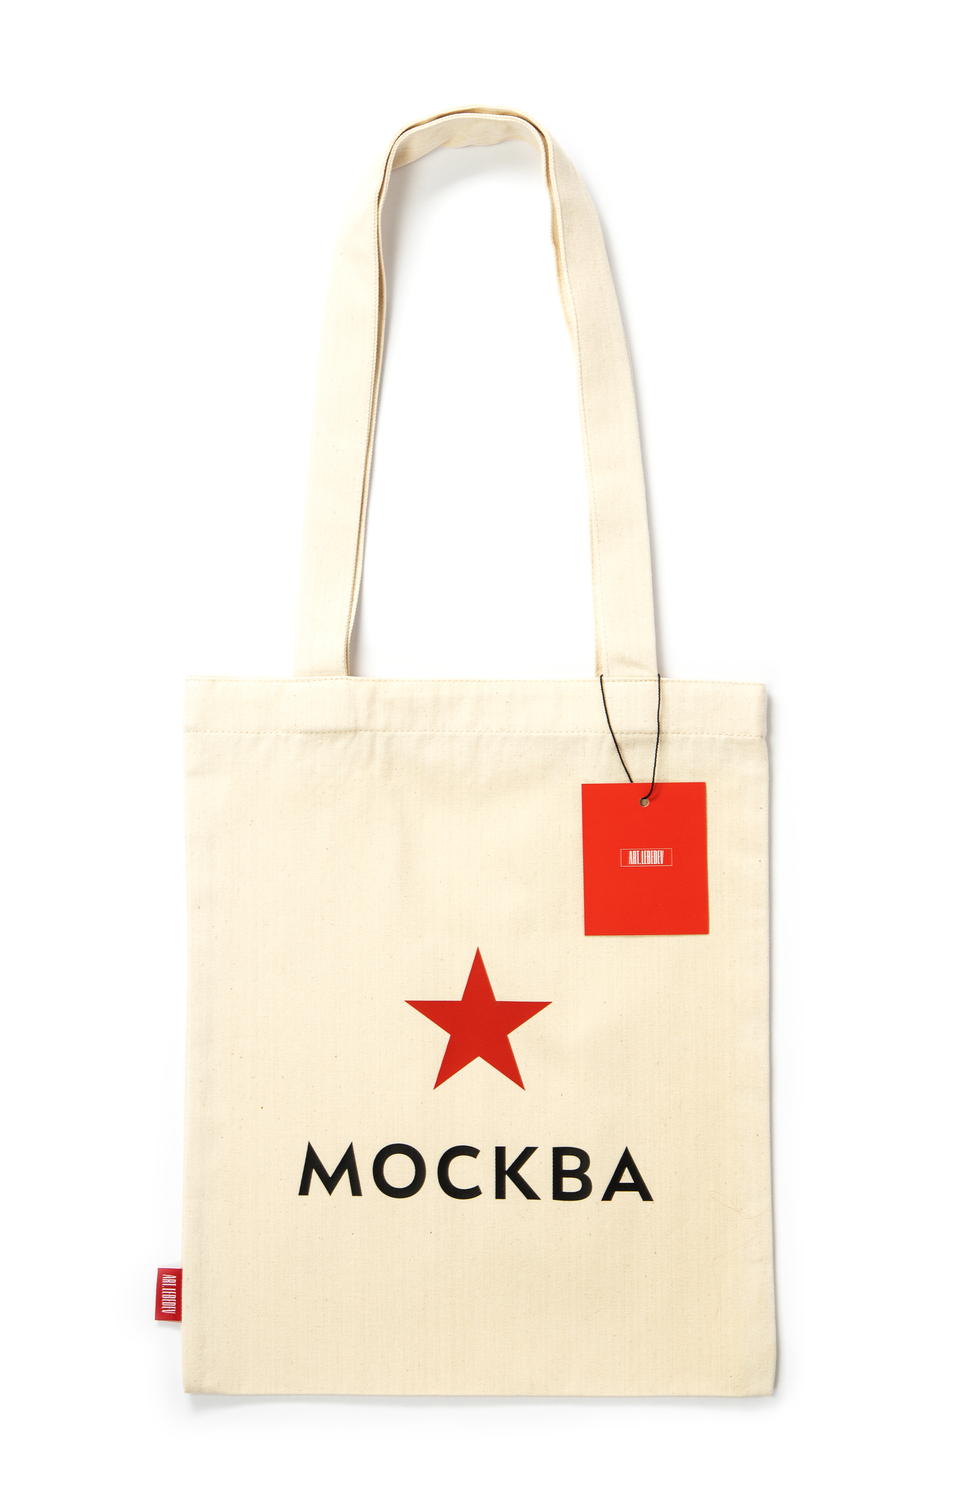 Сумка с логотипом Москвы